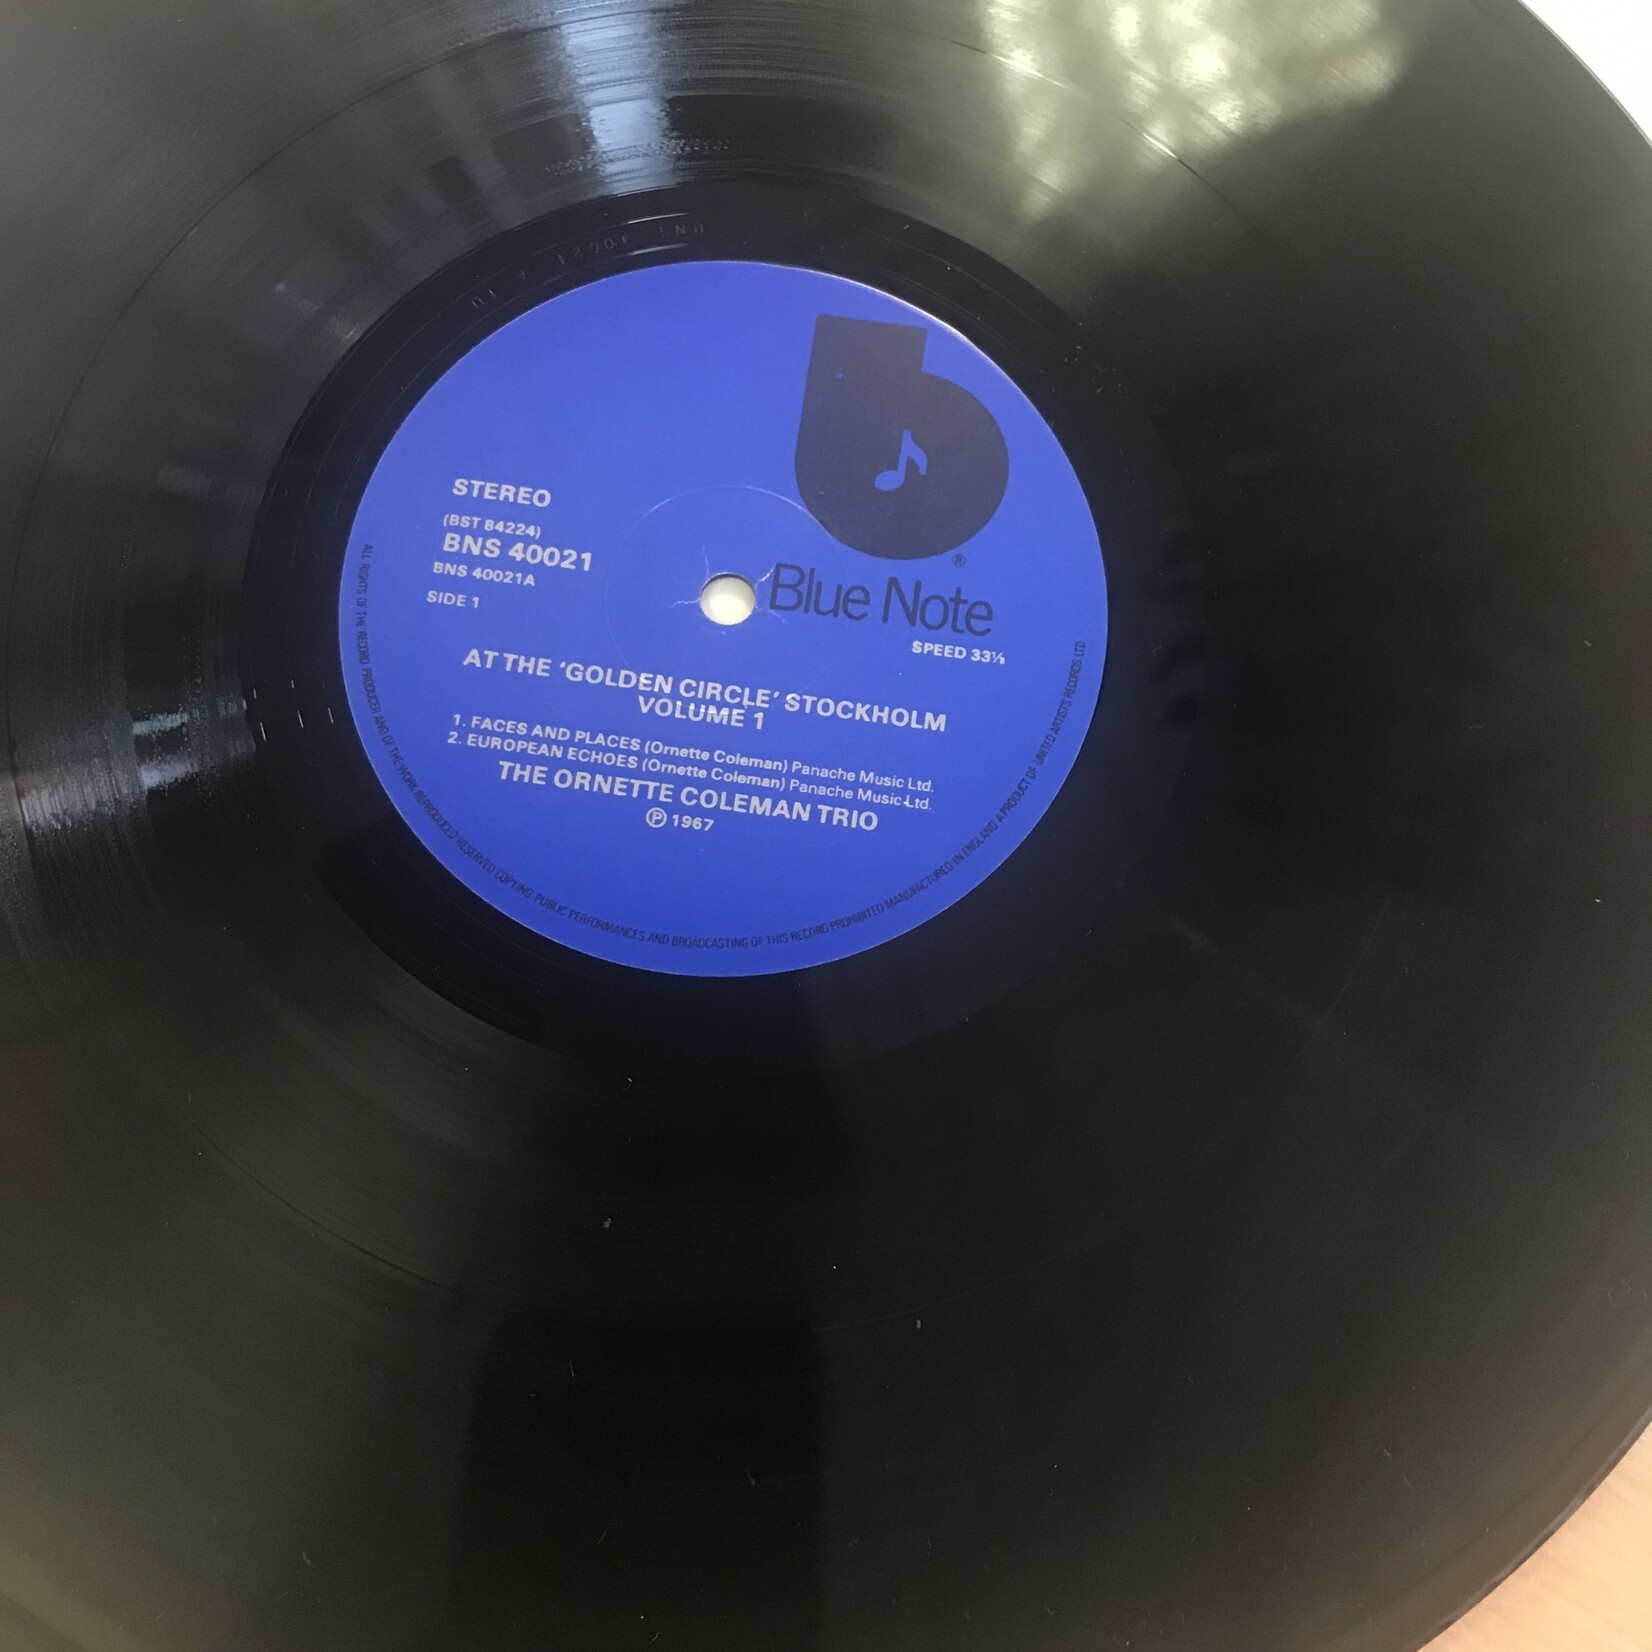 Ornette Coleman - At The Golden Circle Stockholm Volume 1 - BNS 40021 - Vinyl LP (USED - UK)